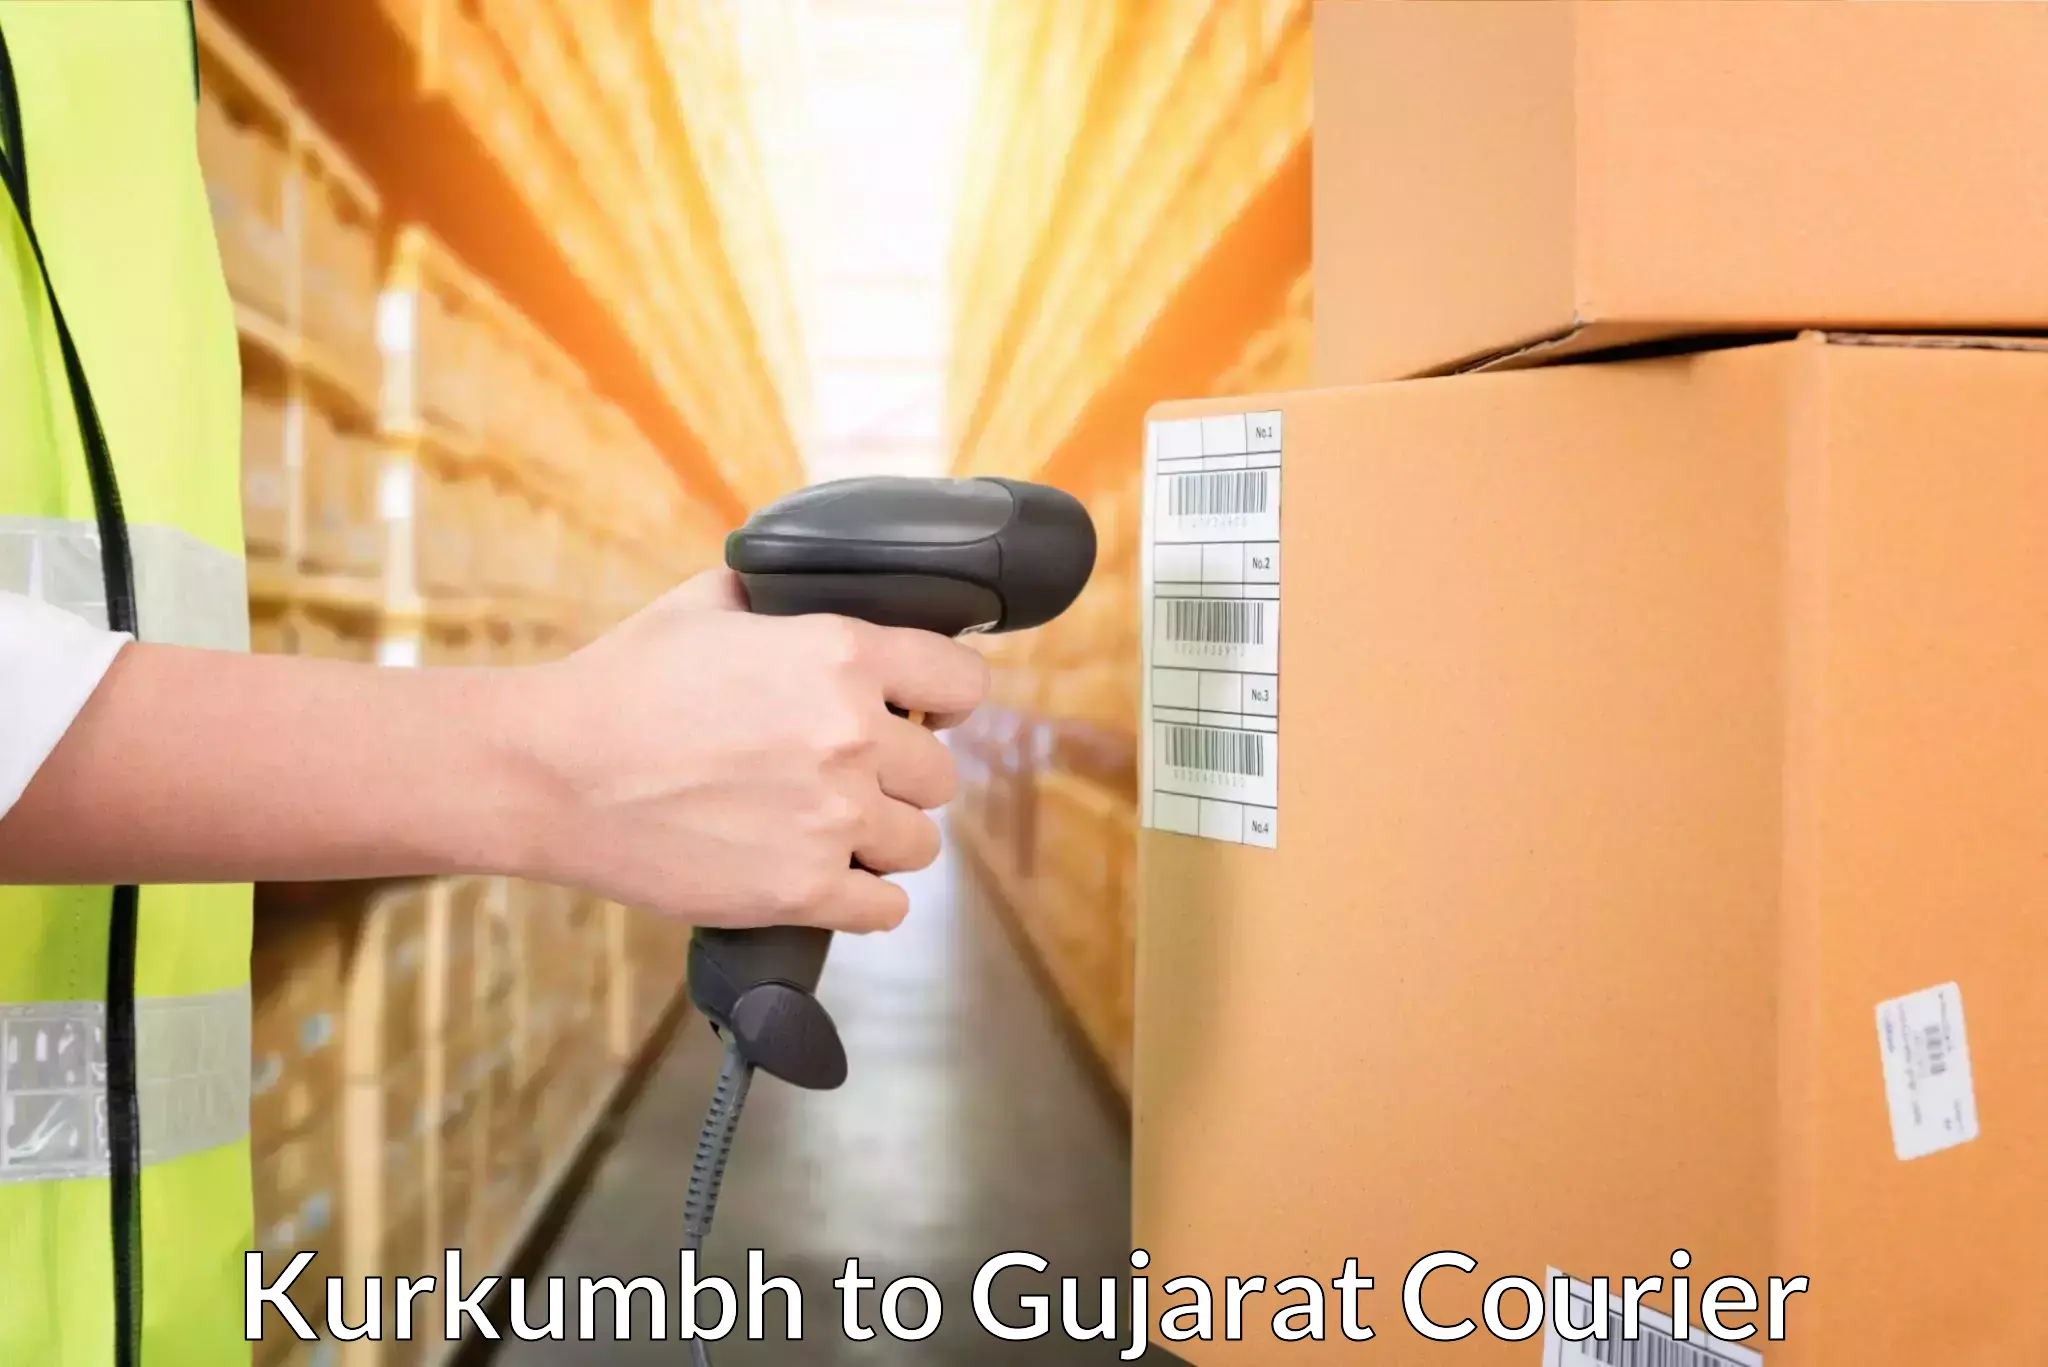 International parcel service Kurkumbh to Ahmedabad